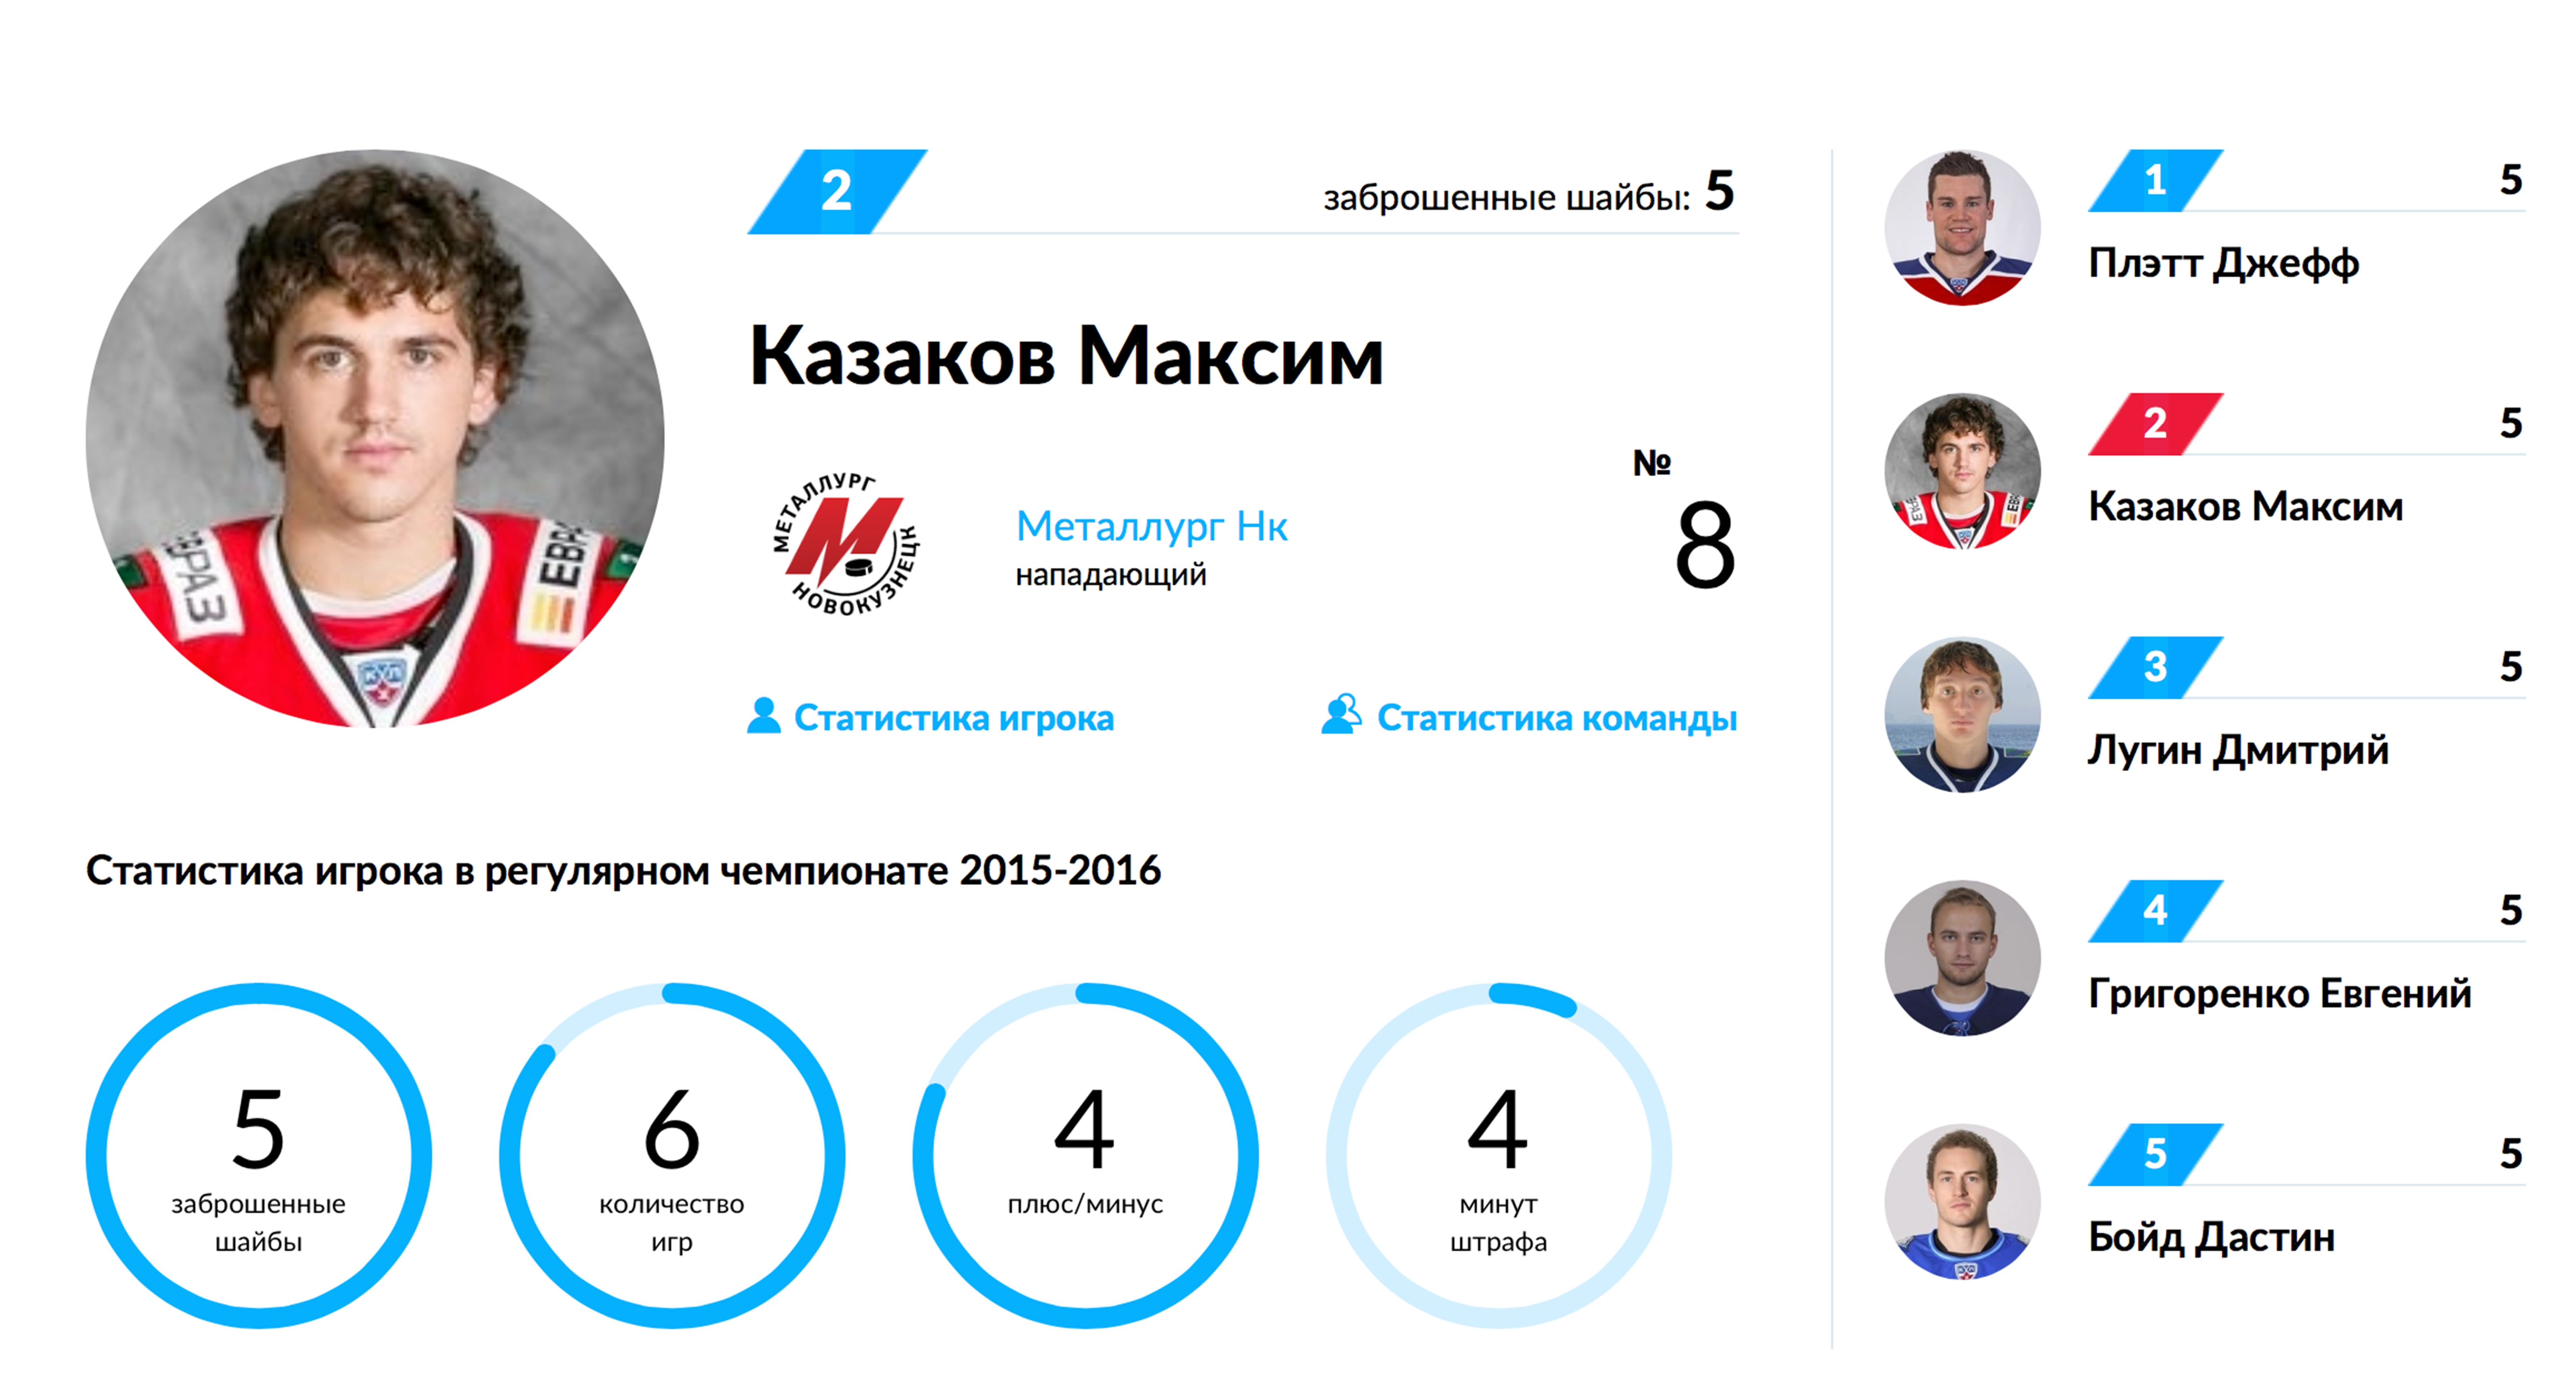 Больше чем Максим Казаков, в КХЛ никто не забивает!